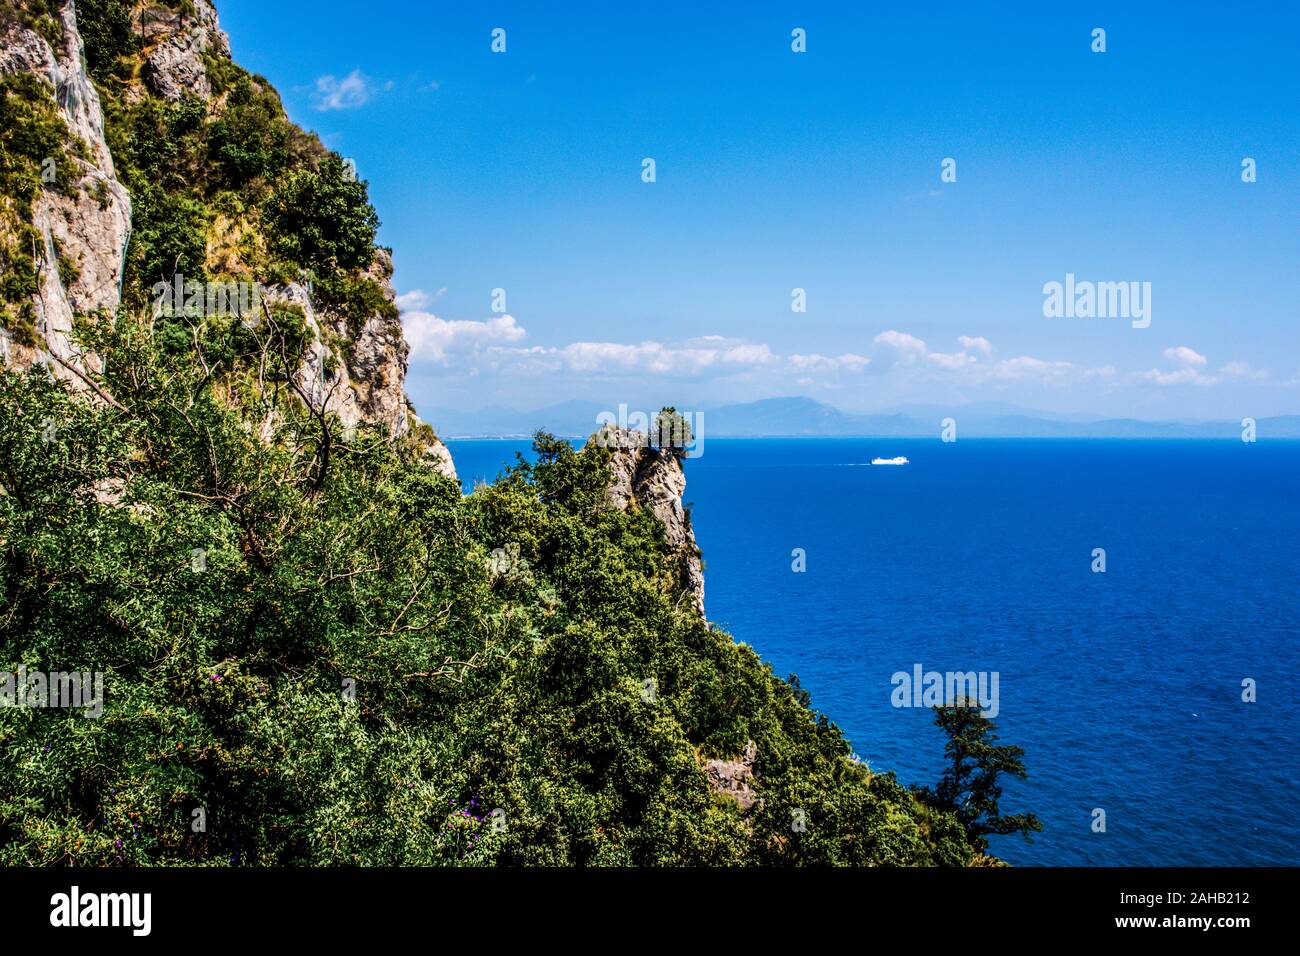 Vue panoramique sur la côte amalfitaine, rochers montagne falaise couverte d'arbres et de plantes sauvages, montagnes de la mer tyrrhénienne et ciel. Banque D'Images